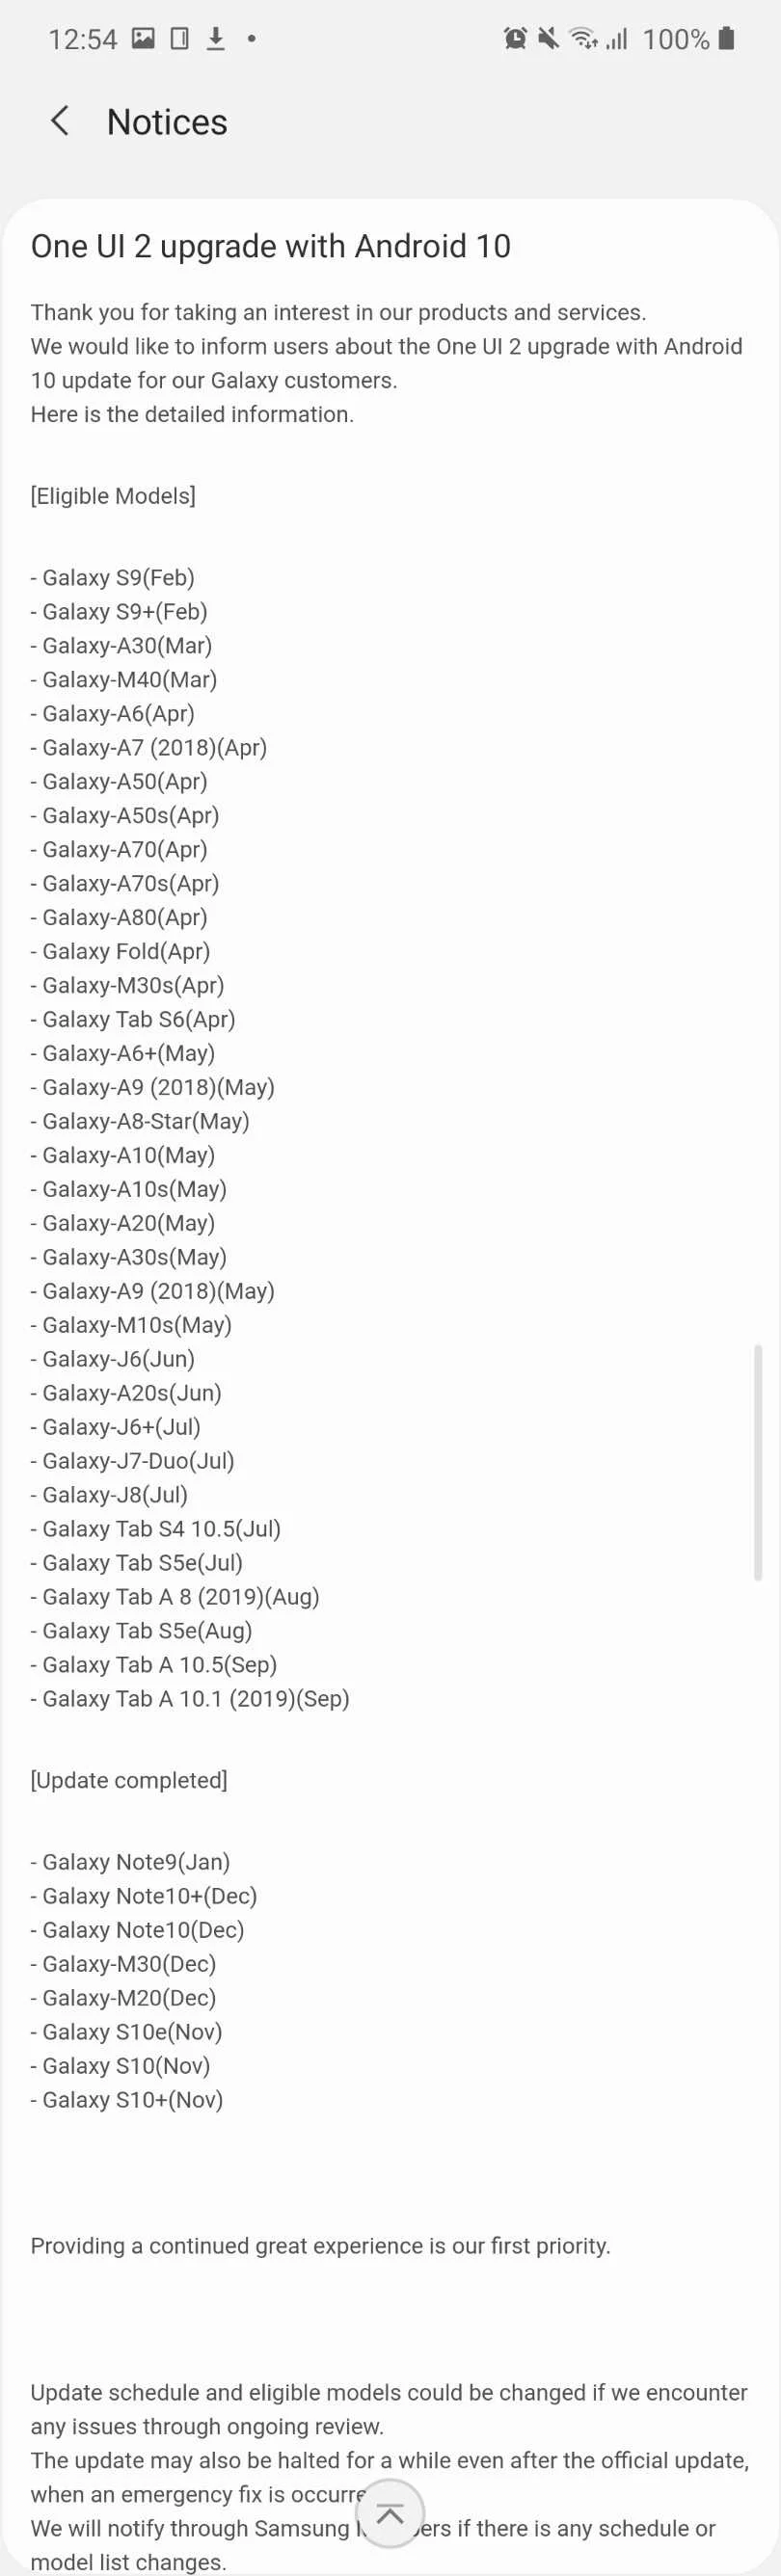 Опубликован список и время обновления до Android 10 смартфонов Samsung - фото 1